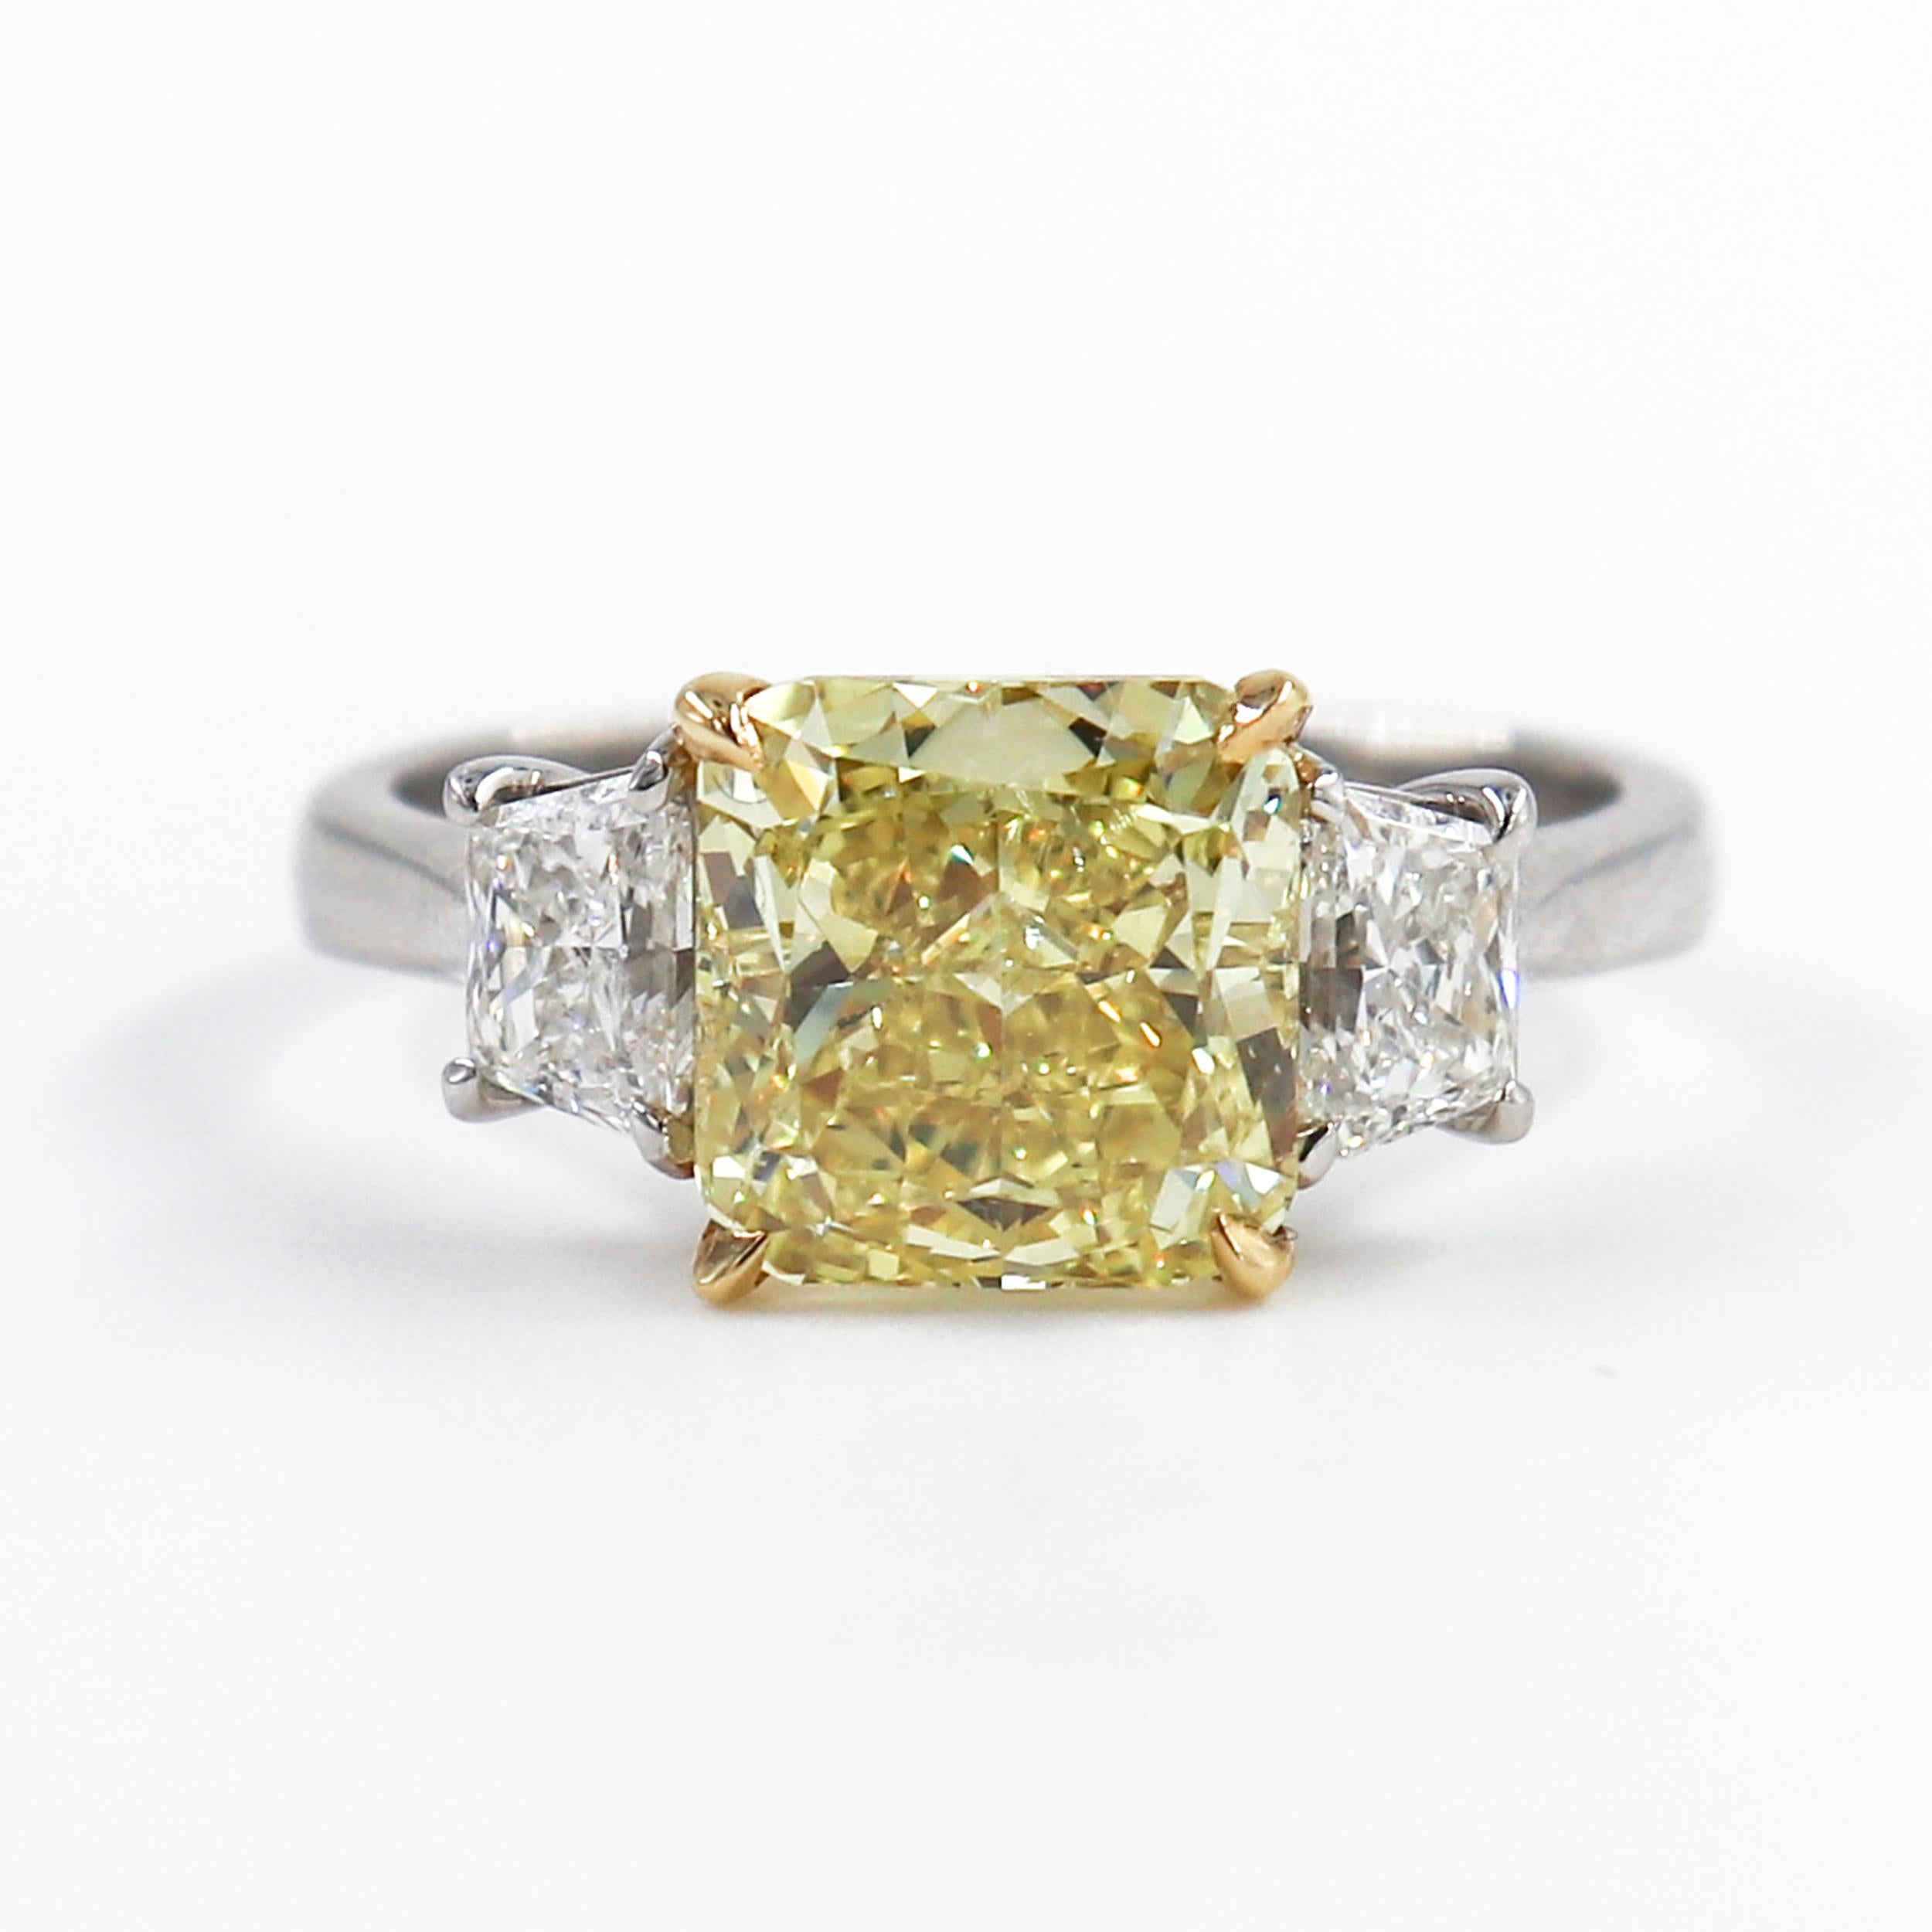 Cette superbe bague de J. Birnbach est ornée d'un diamant jaune de taille radiant de 2,86 carats, d'une couleur exceptionnelle. La couleur du diamant a été classée Fancy Vivid par le GIA, et il est rare de trouver un diamant avec une couleur aussi